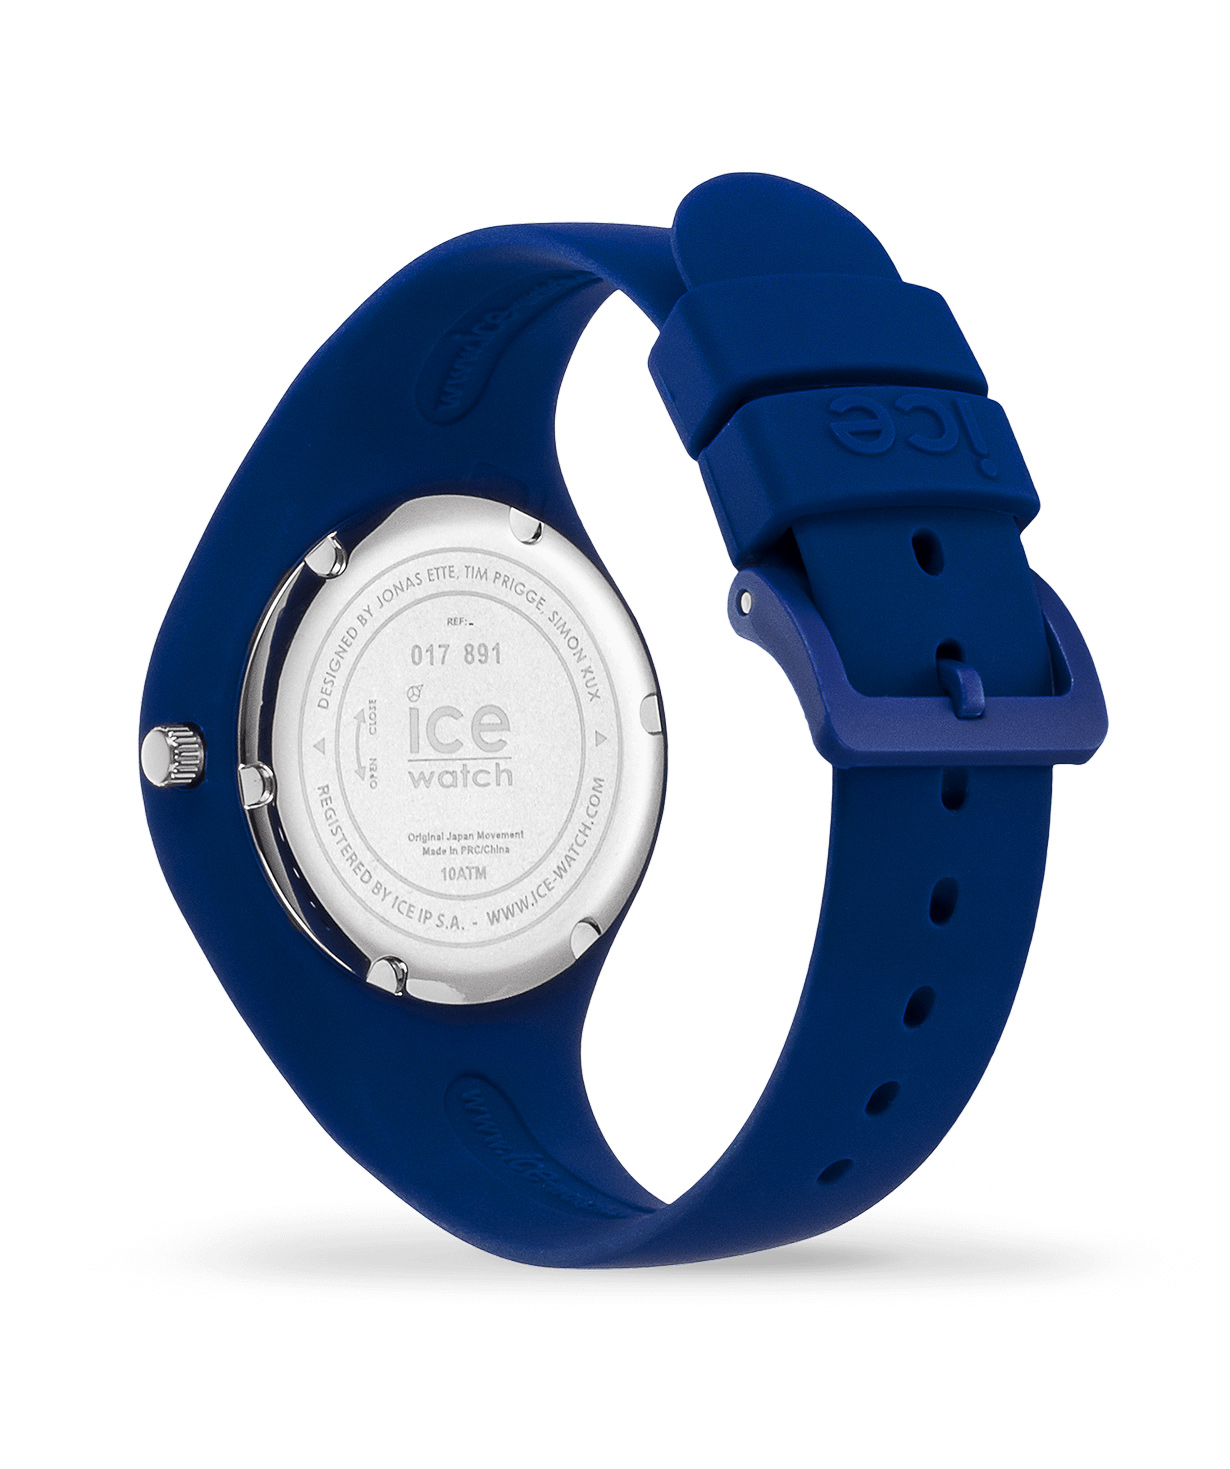 Ժամացույց «Ice-Watch» ICE fantasia - Car